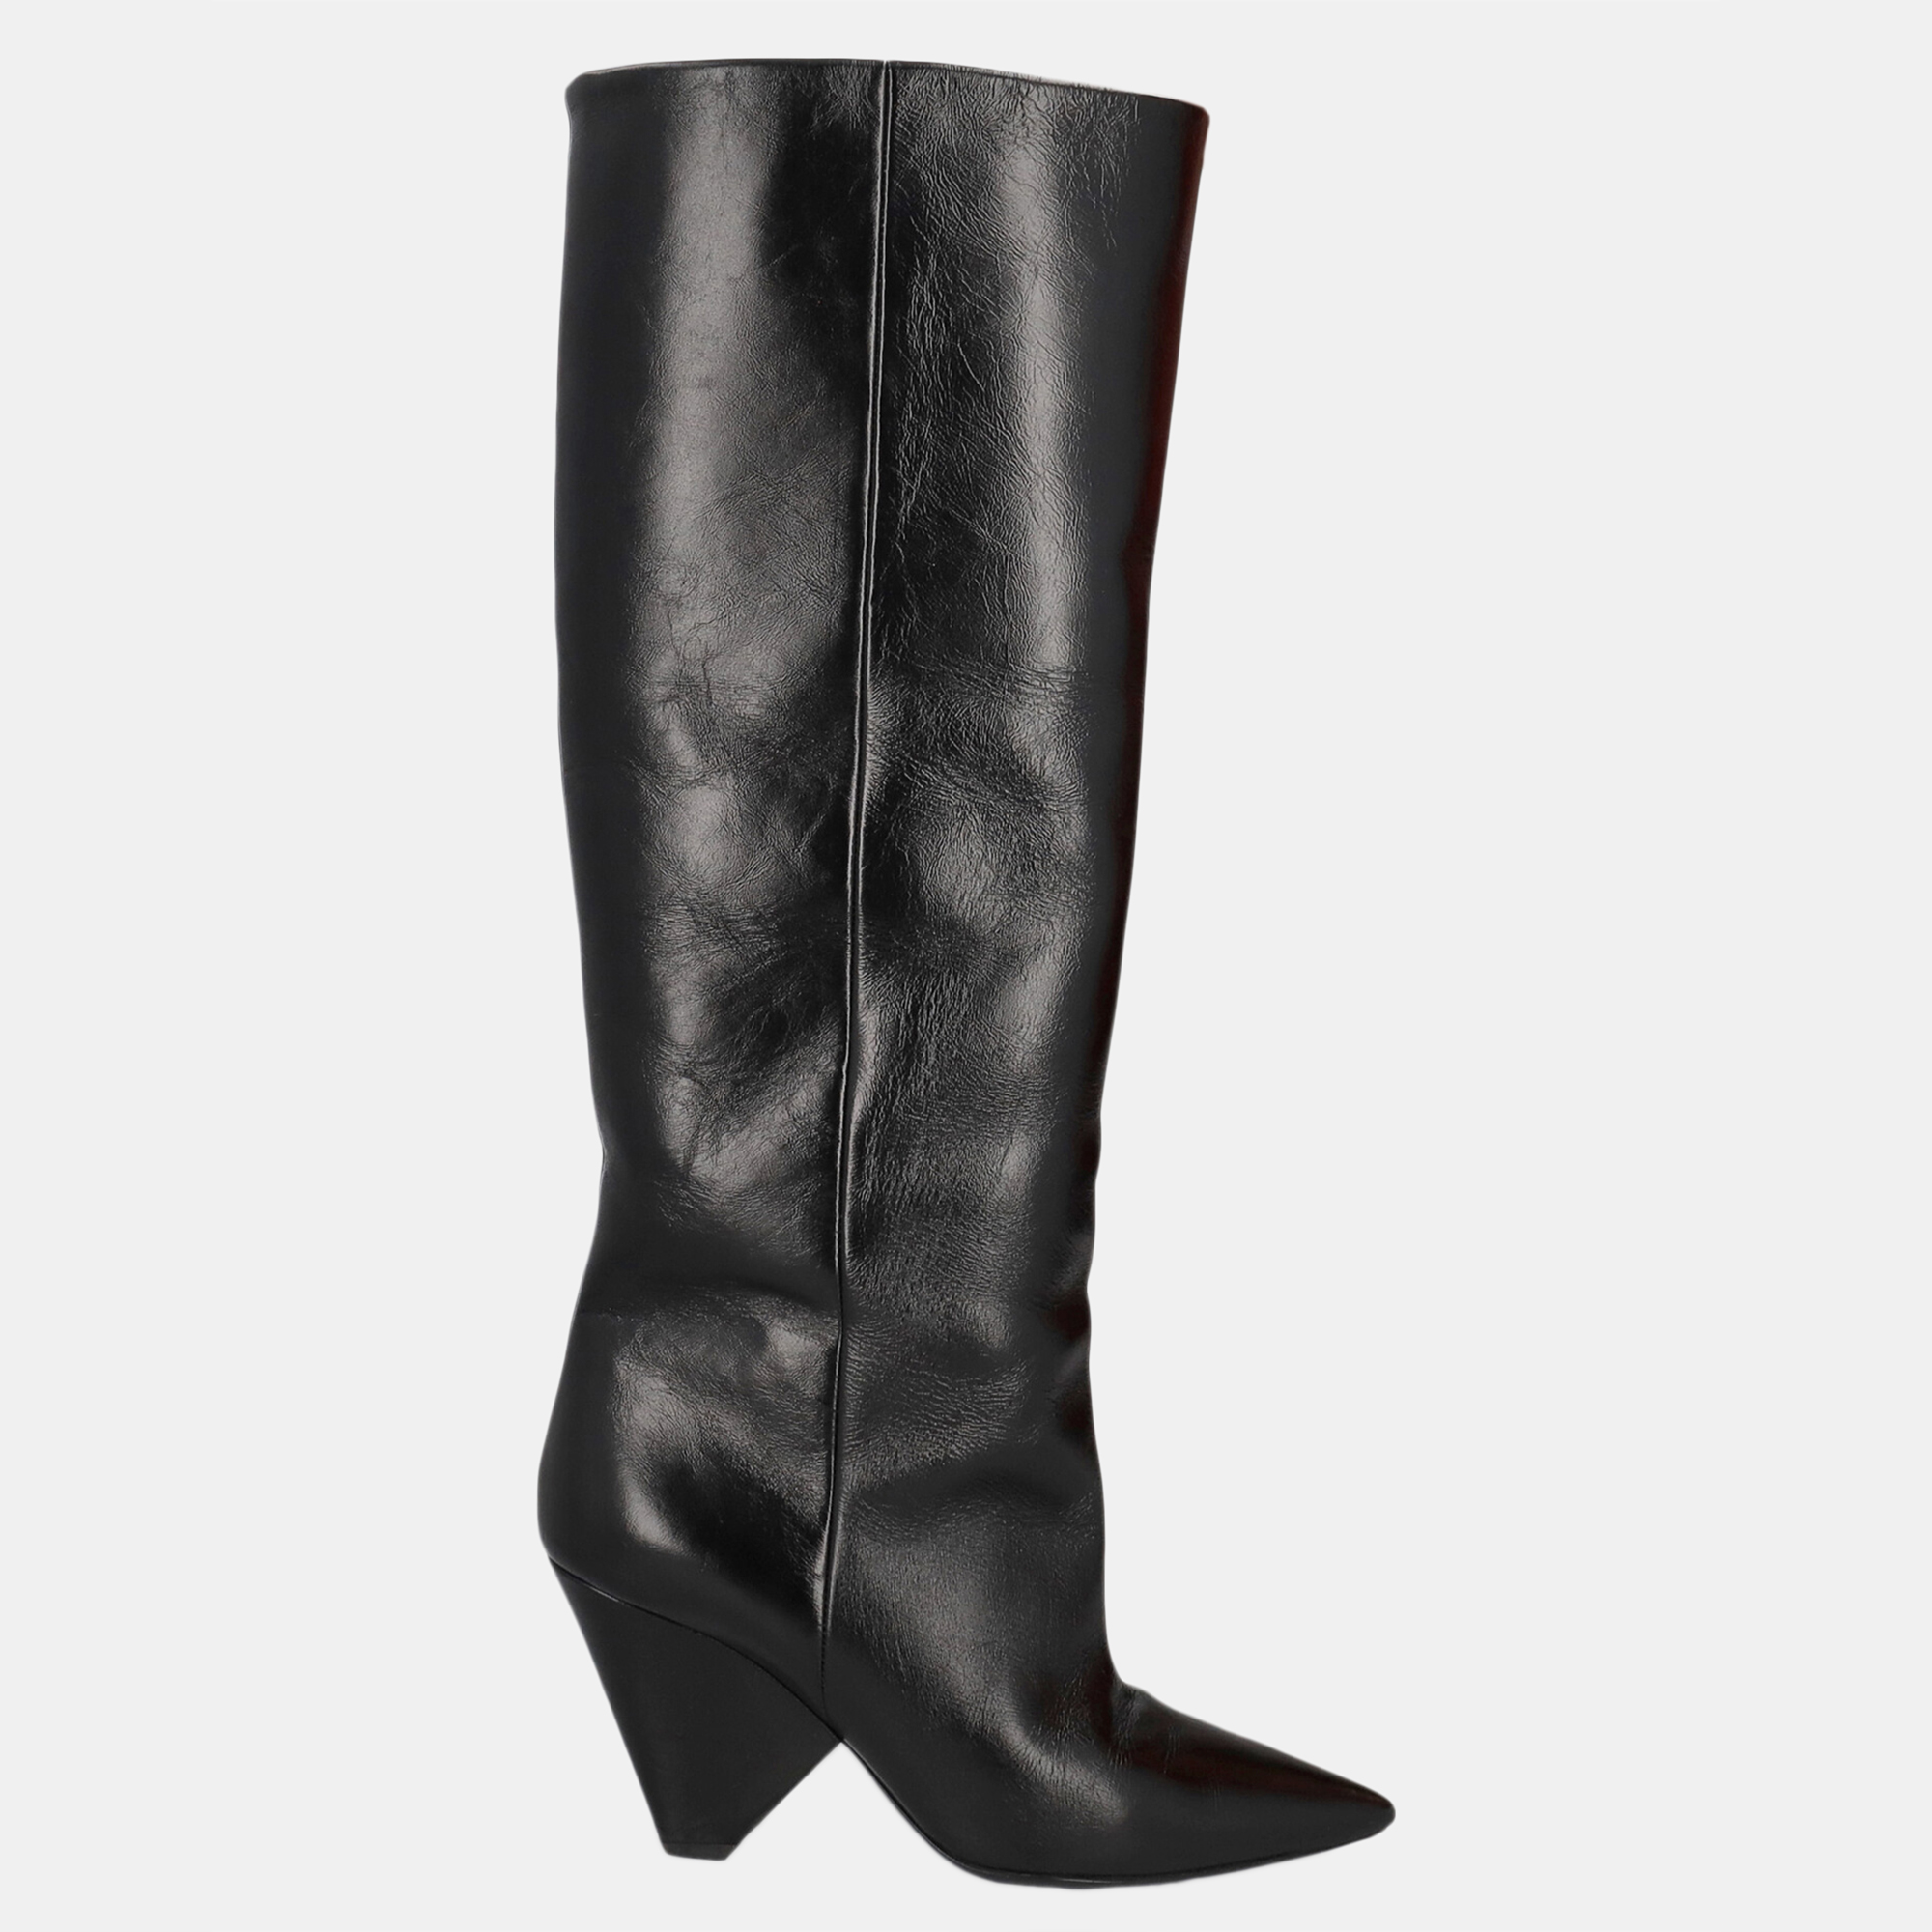 Saint Laurent  Women's Leather Boots - Black - EU 37.5